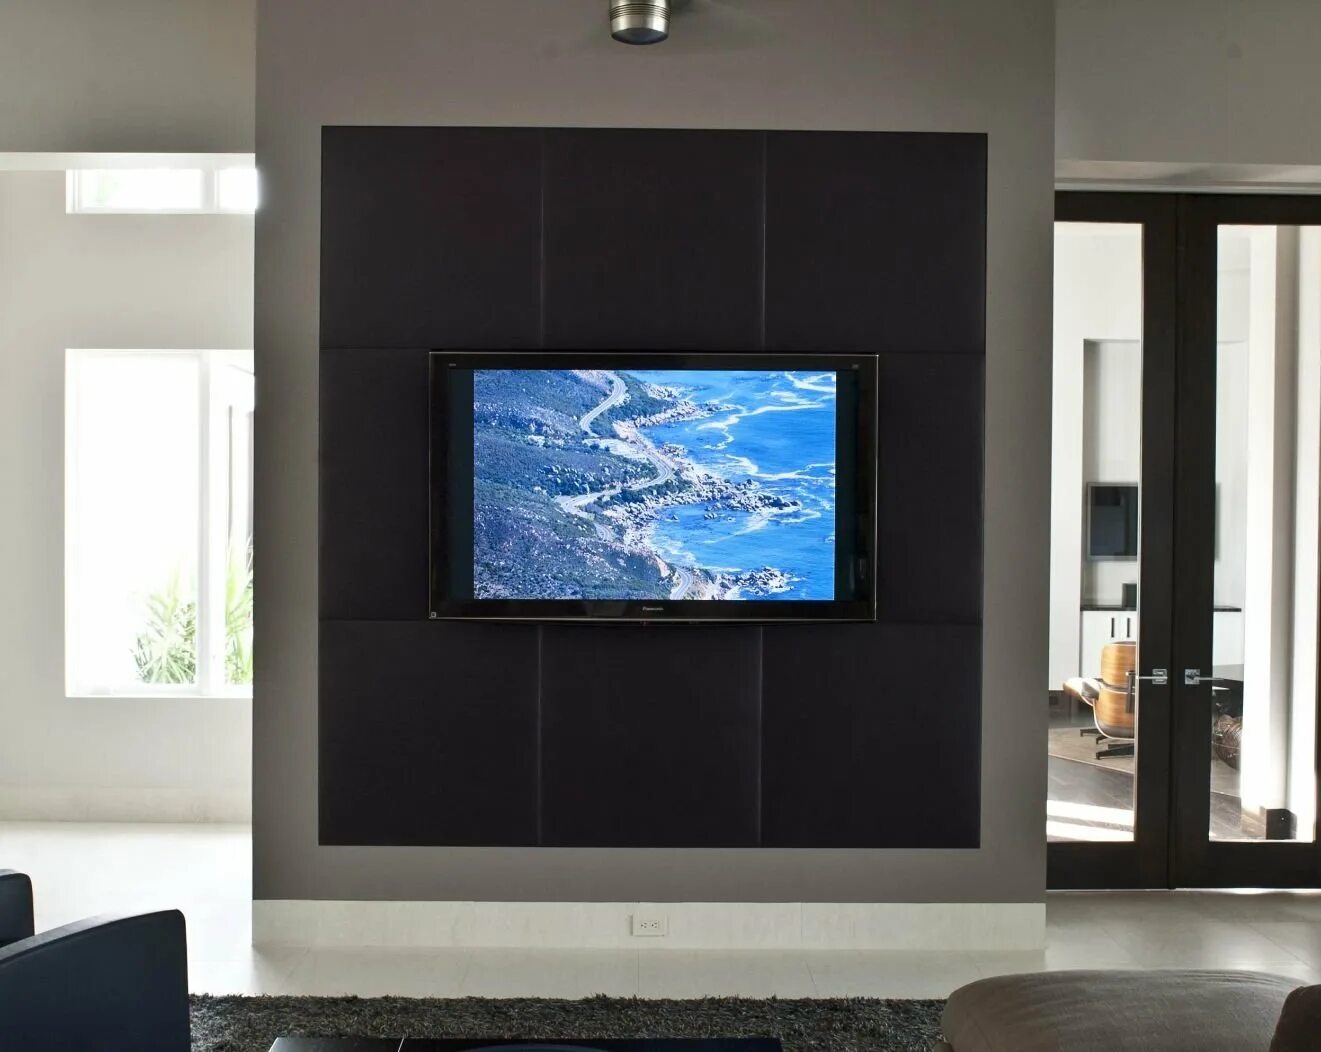 Встроенные каналы в телевизоре. Телевизор встроенный в стену. Телевизор встроен в стену. Встраиваемый телевизор. Панель для телевизора.